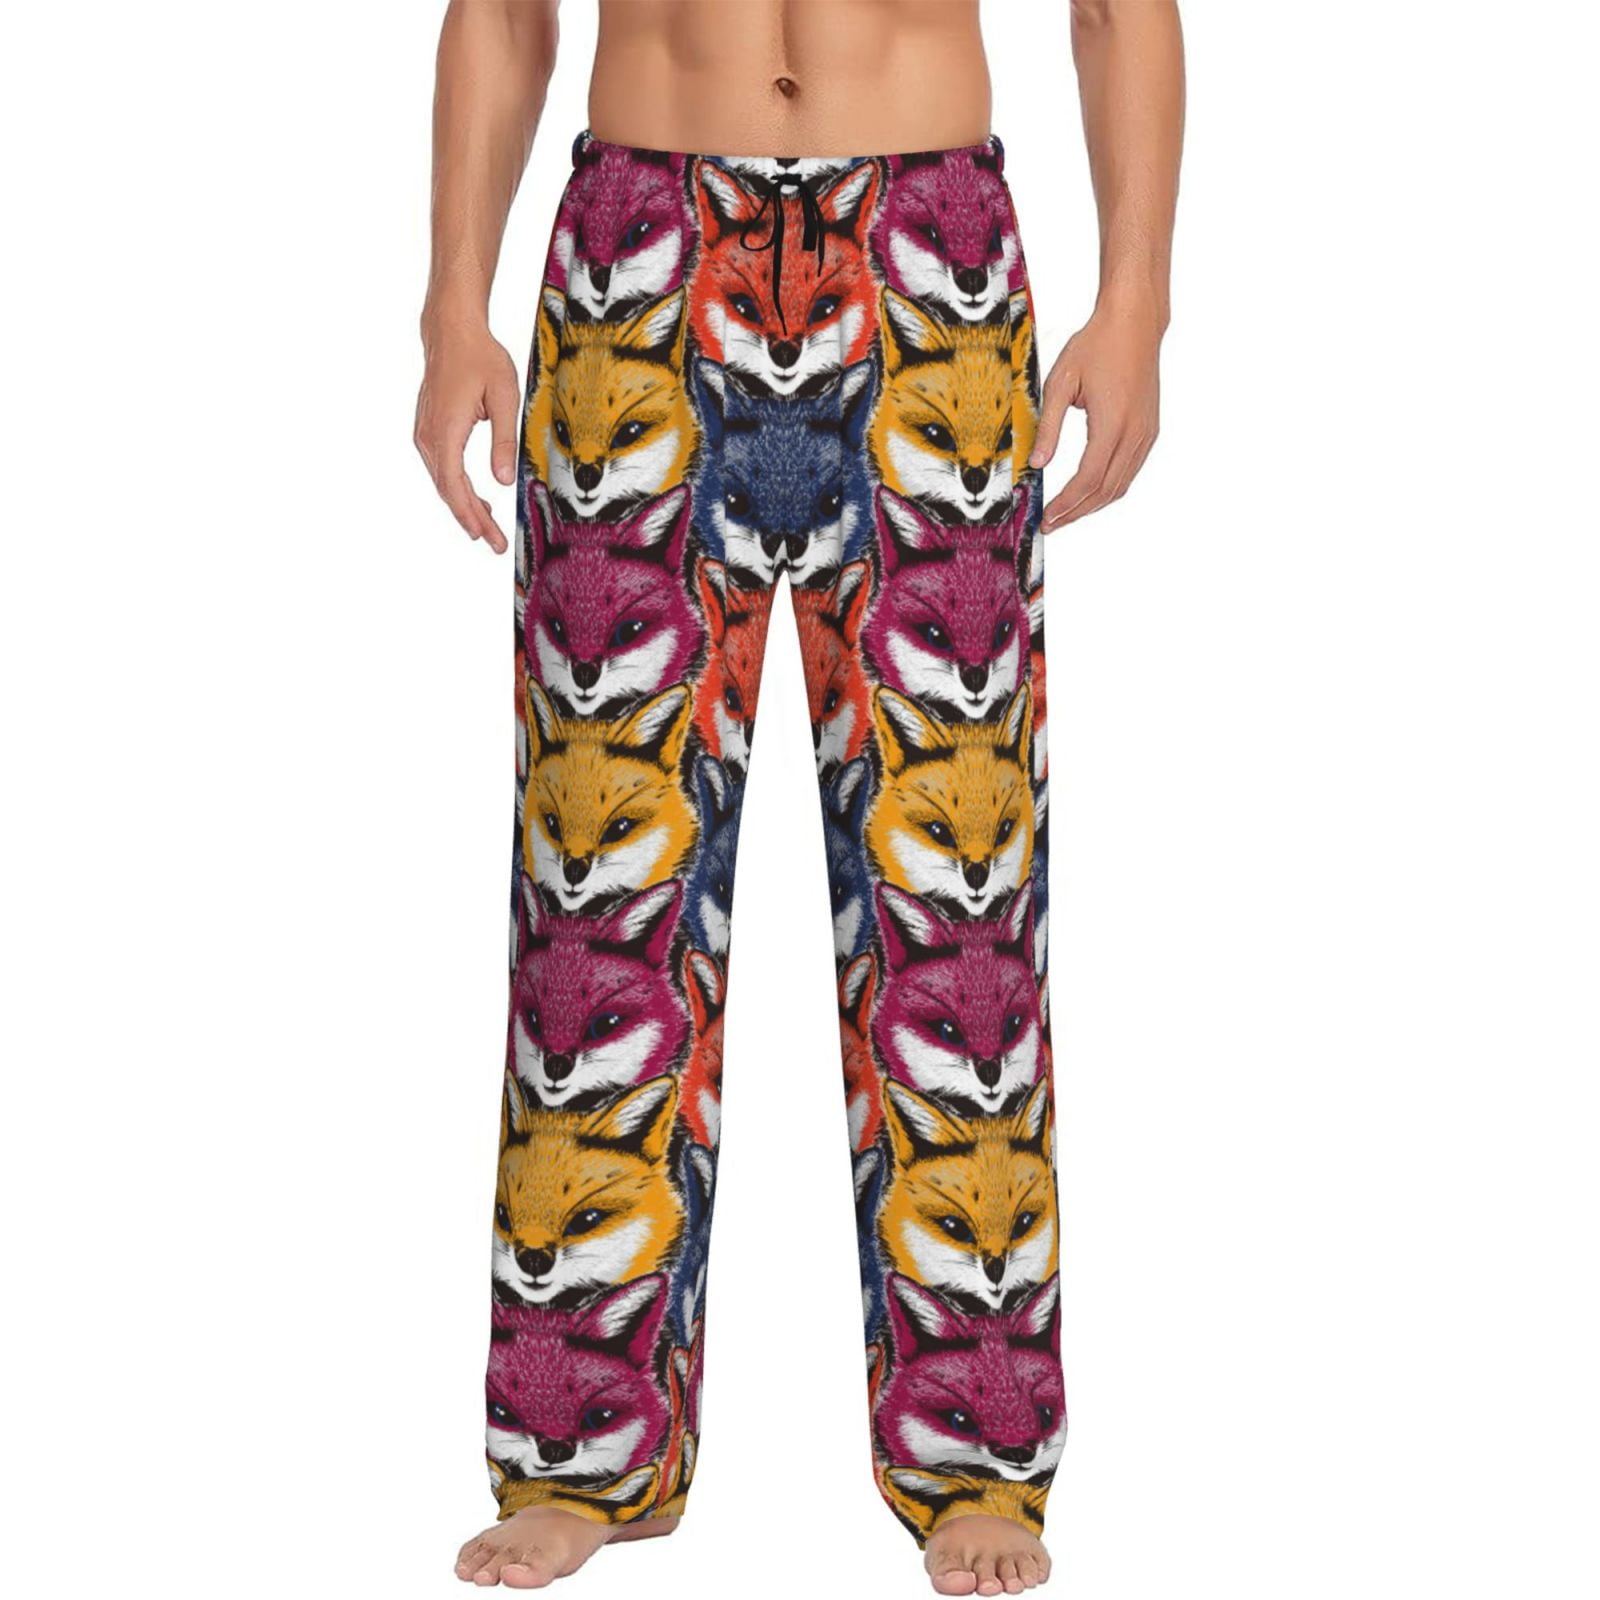 Fotbe Fox Face Men's Pajama Pants,Sleepwear Pants,Pj Bottoms Drawstring ...